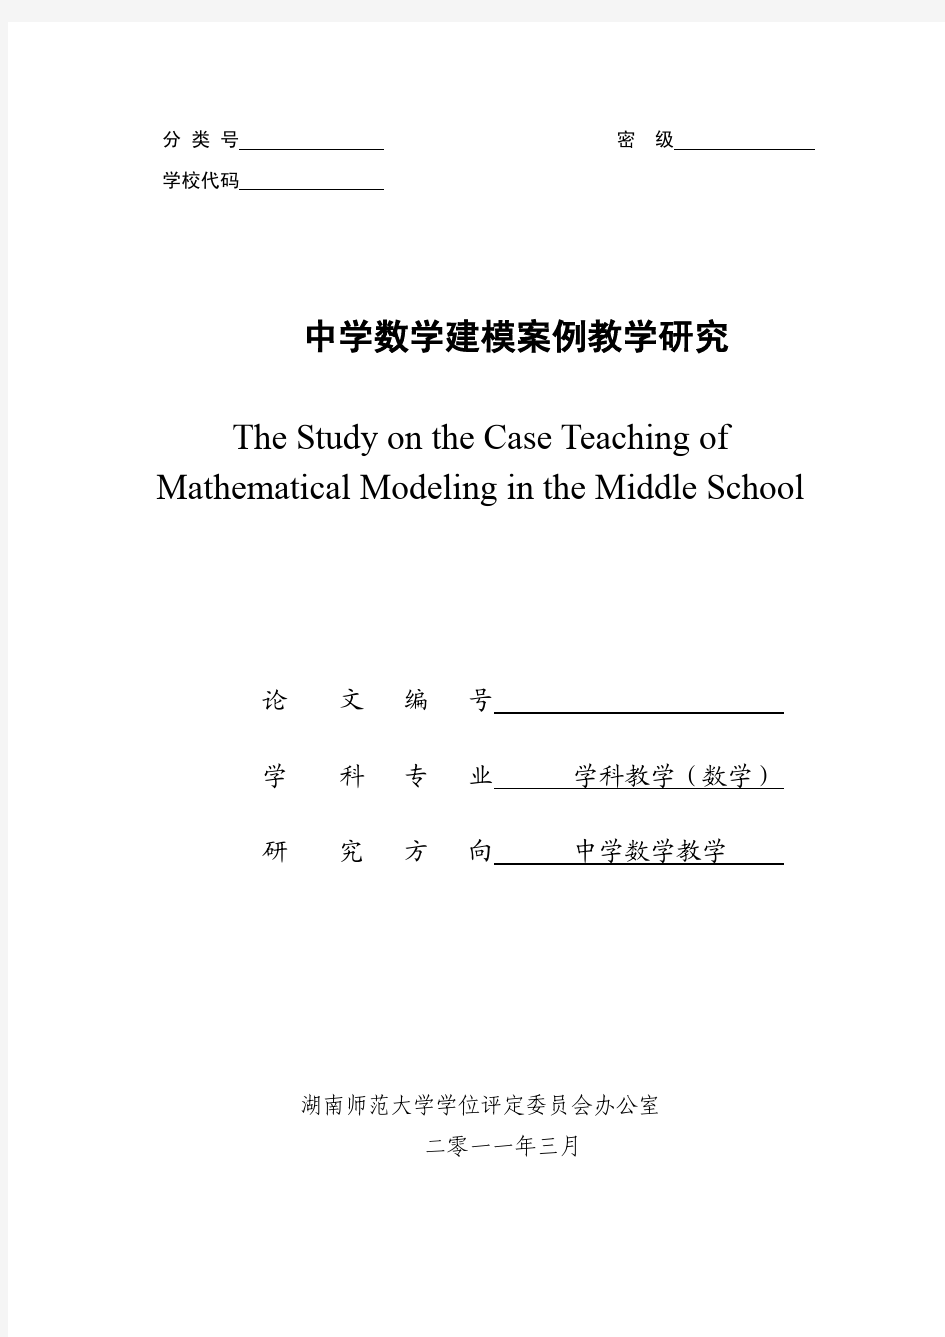 中学数学建模案例教学研究.pdf